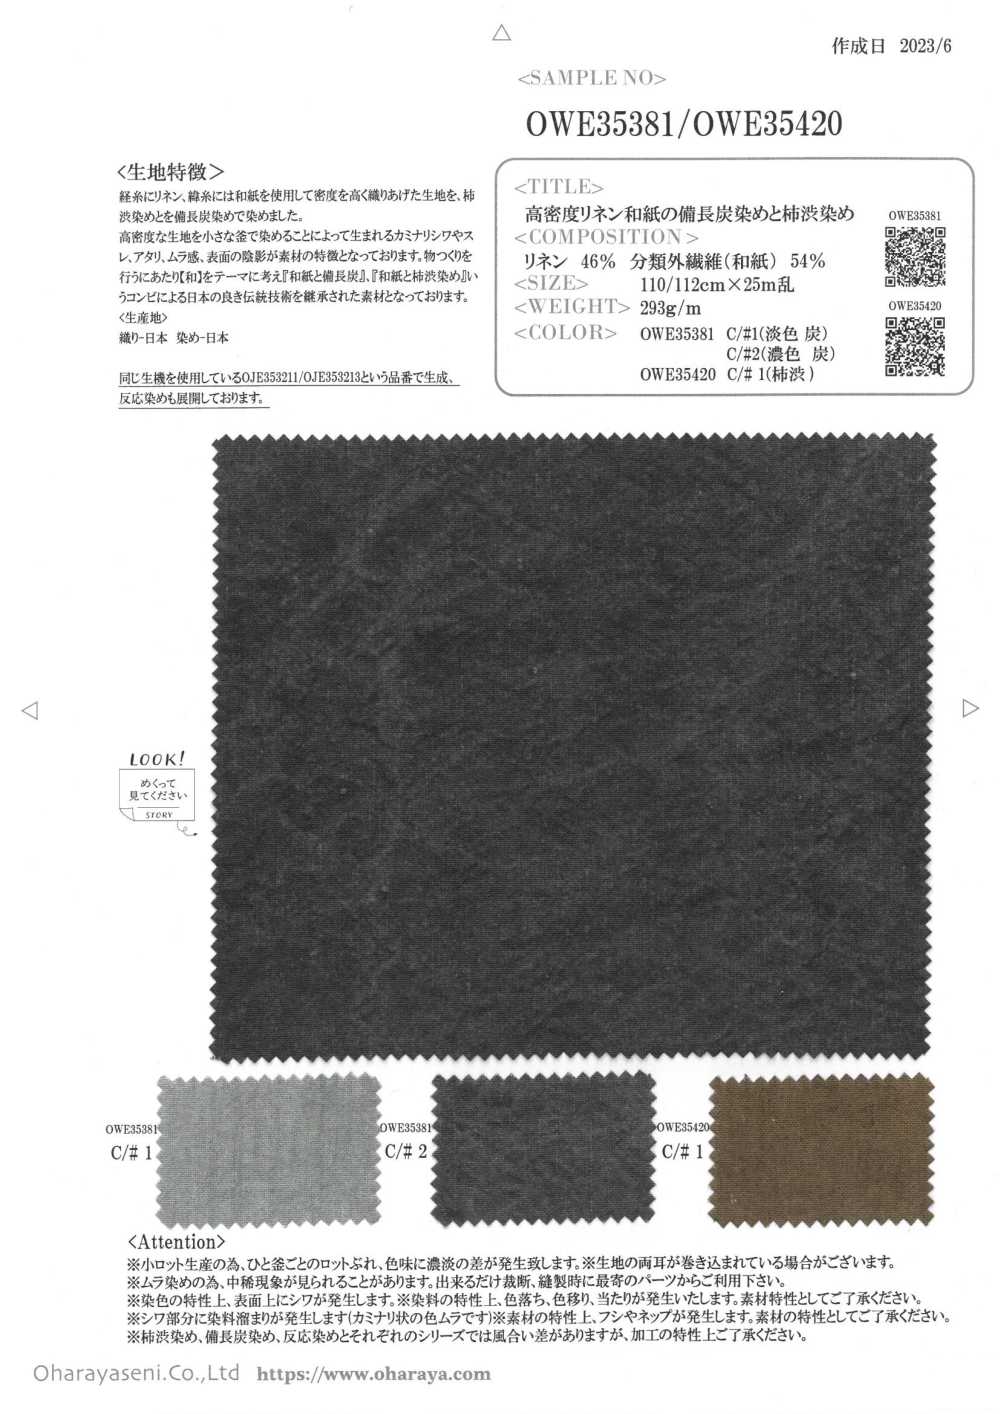 OWE35420 Mit Persimmon-Tannin Gefärbtes, Hochdichtes Leinen-Washi[Textilgewebe] Oharayaseni